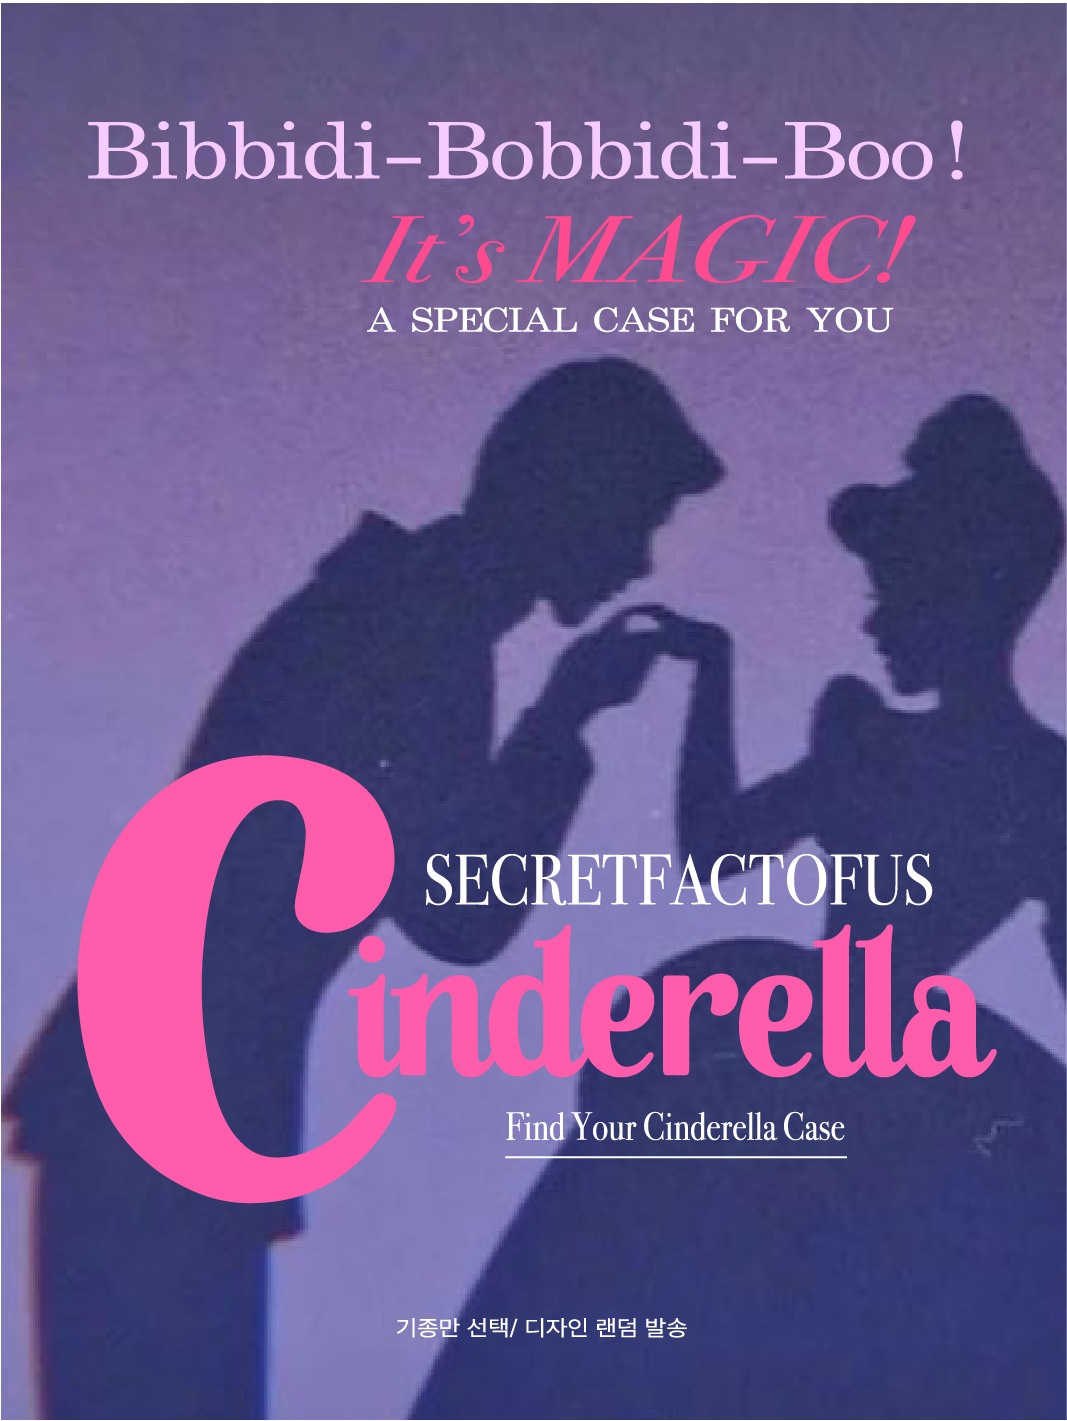 Find your Cinderella Case